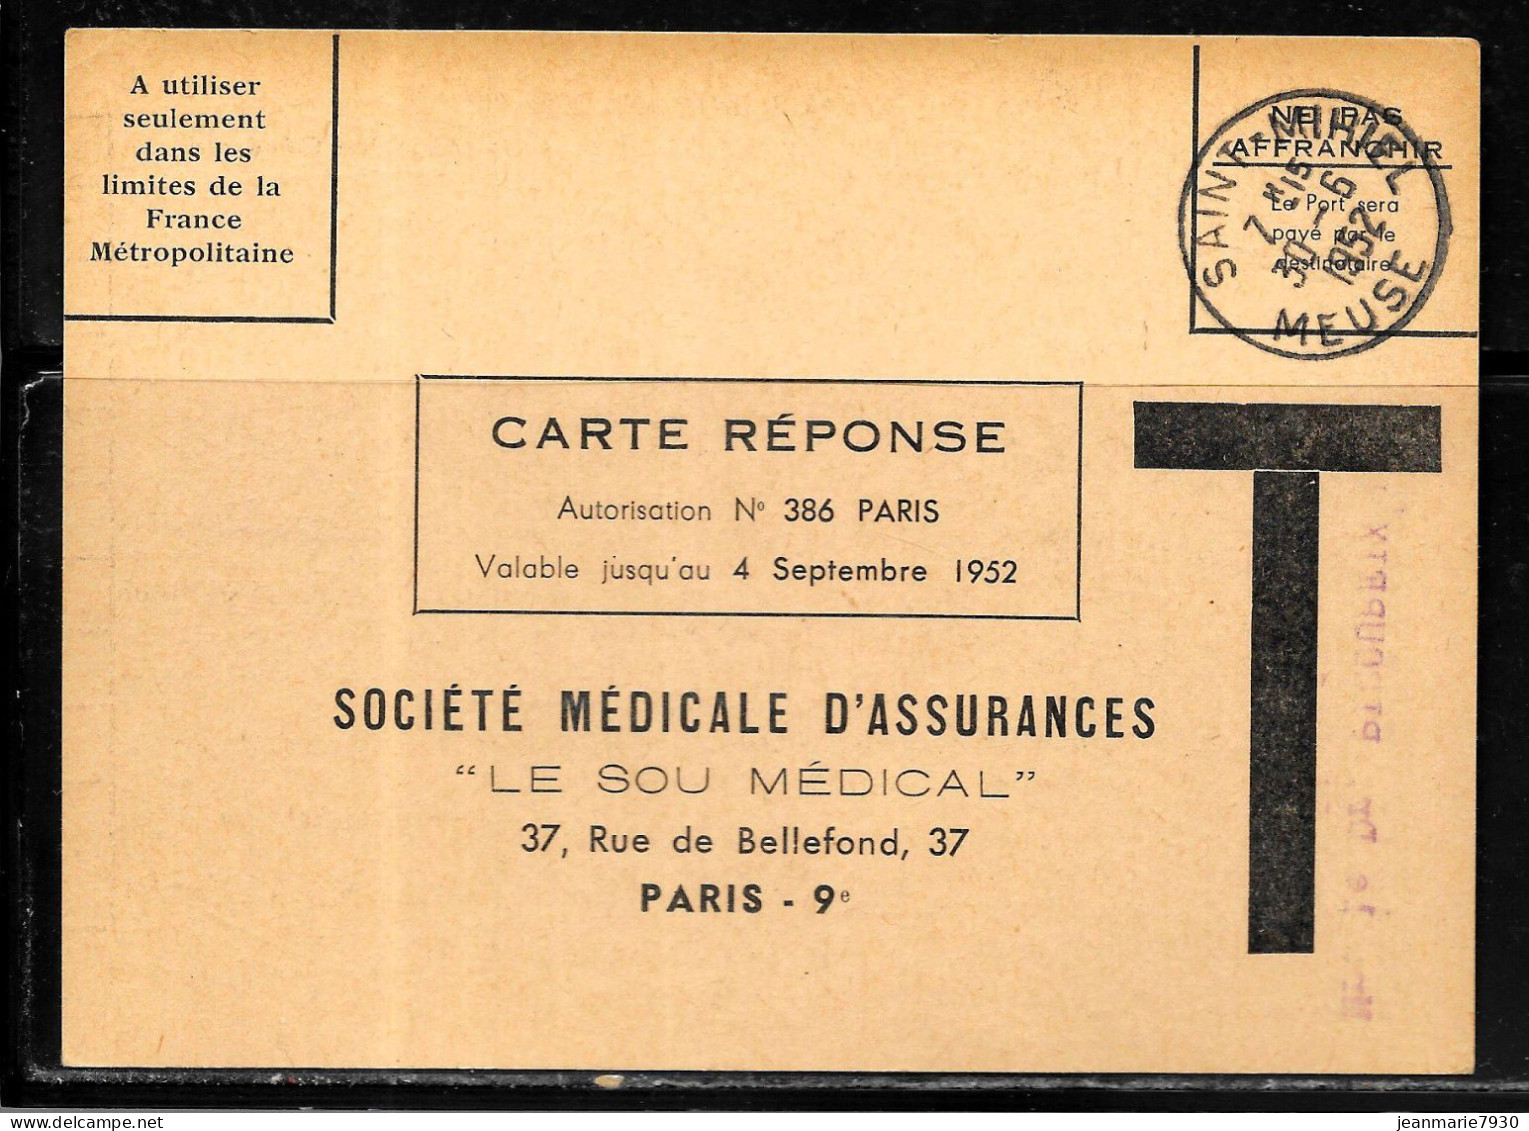 F376 - CARTE REPONSE DE LA SOCIETE MEDICALE D'ASSURANCES OBLITEREE SAINT MIHIEL DU 30/06/52 - Civil Frank Covers